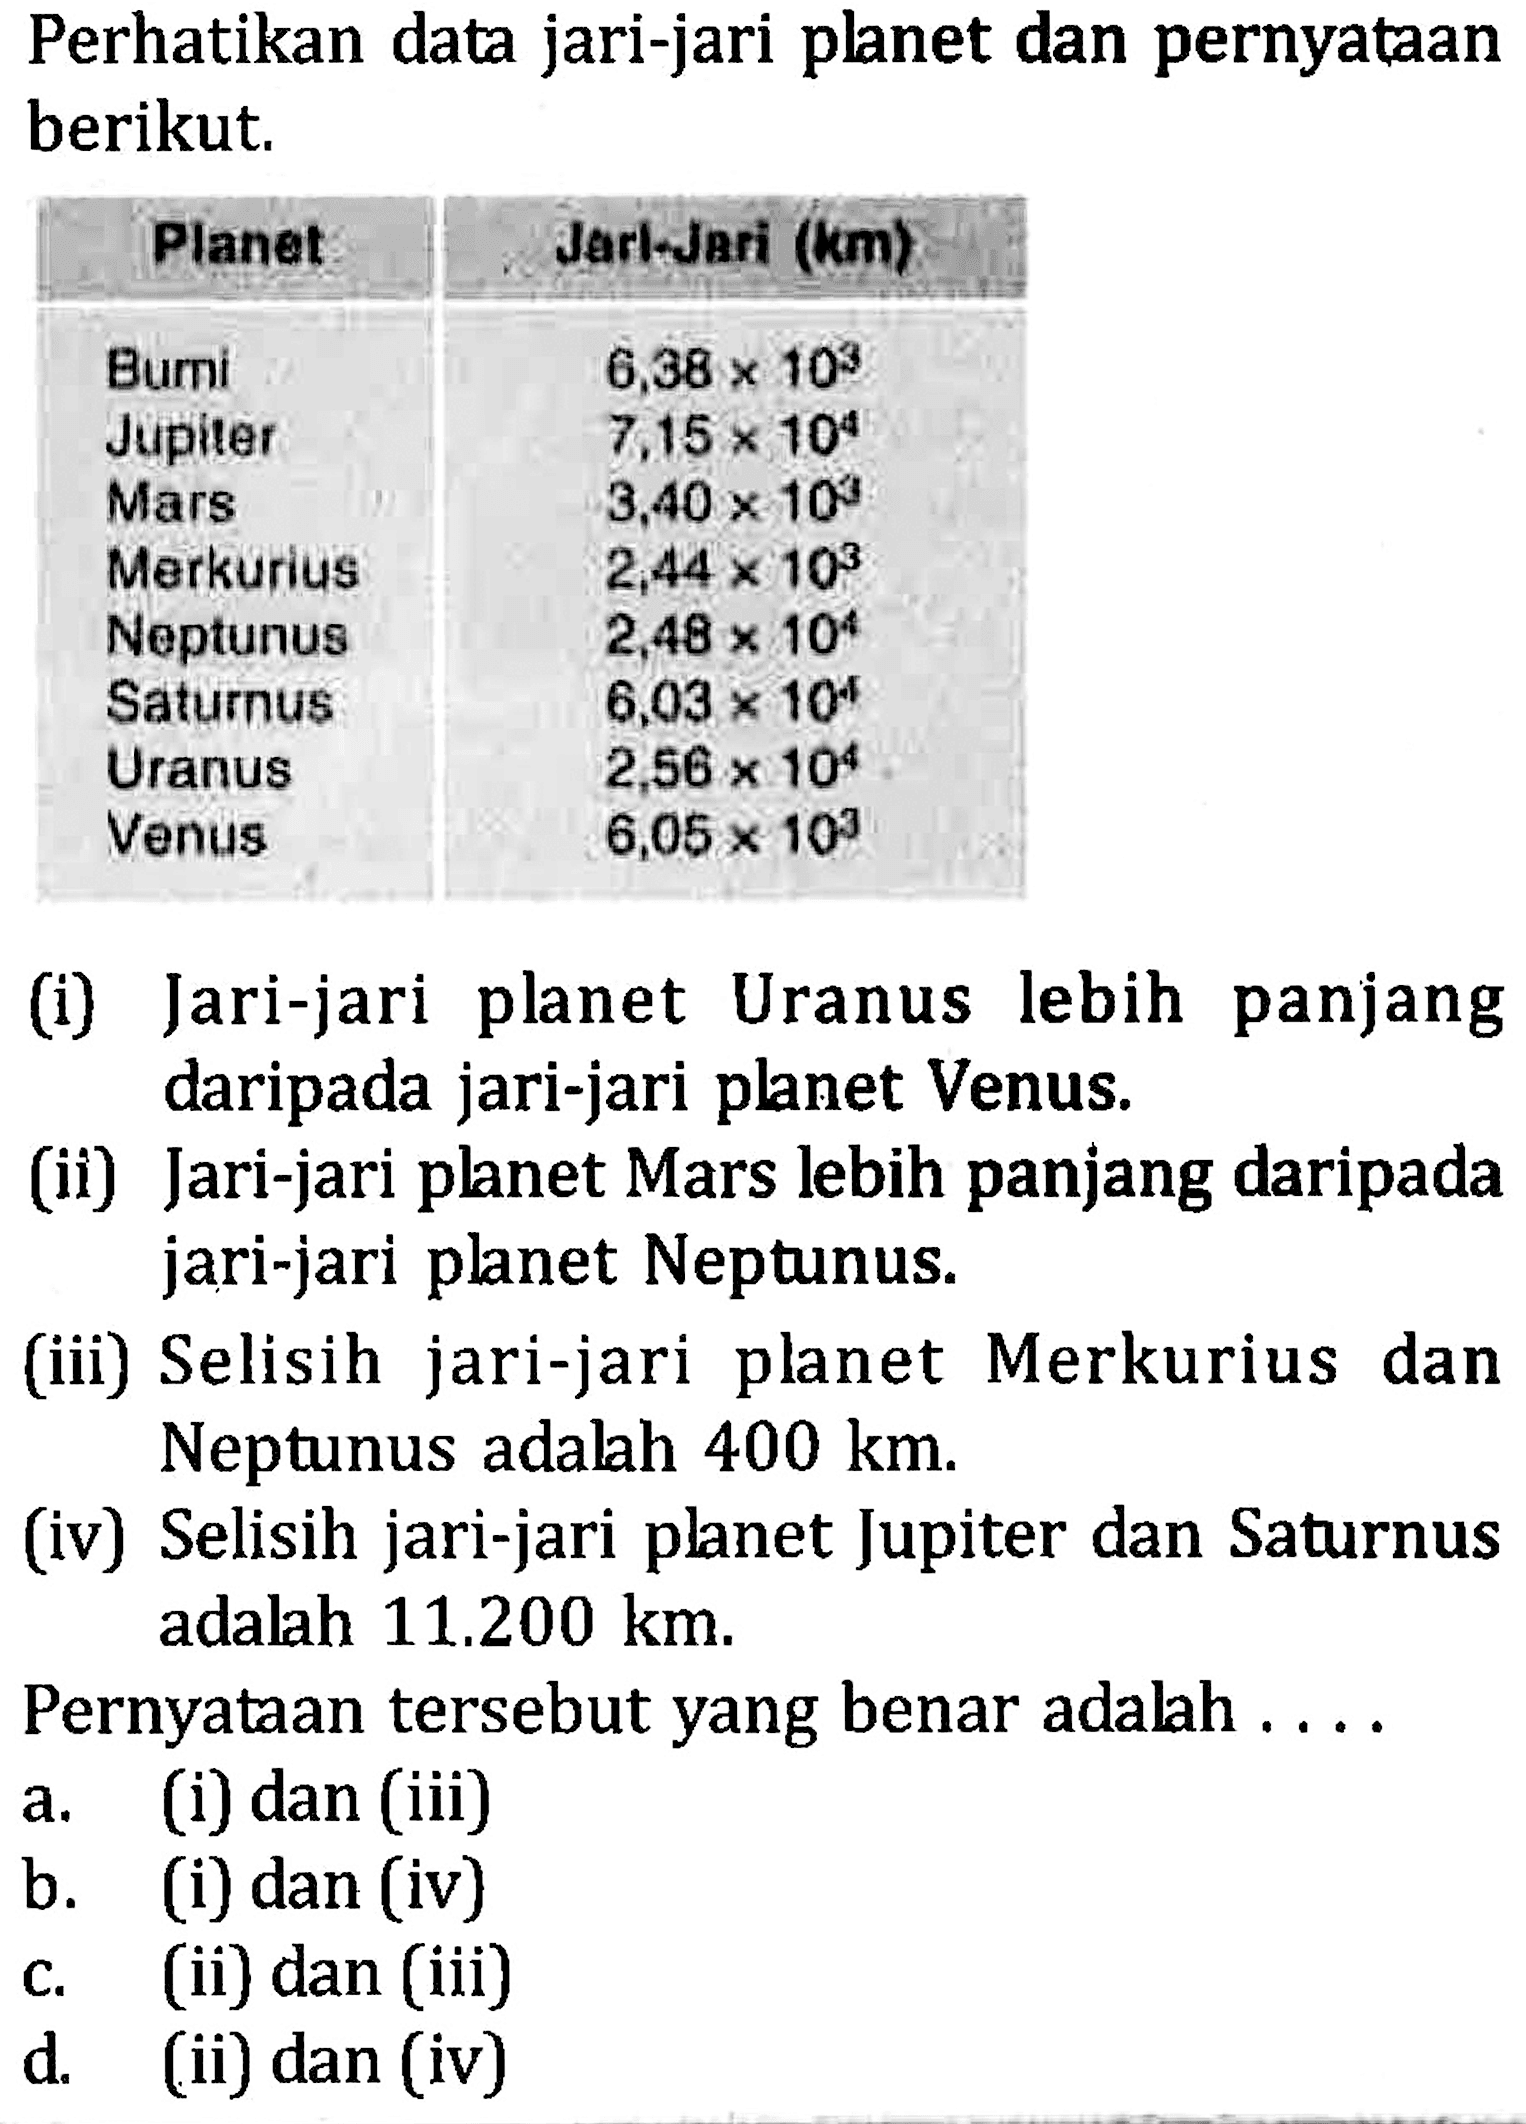 Perhatikan data jari-jari planet dan pernyataan berikut. Planet Jarl-Jari (km) Bumi 6,38 x 10^3 Jupiter 7,15 x 10^4 Mars 3,40 x 10^3 Merkurius 2,44 x 10^3 Neptunus 2,48 x 10^4 Saturnus 6,03 x 10^4 Uranus 2,56 x 10^4 Venus 6,05 x 10^3 (i) Jari-jari planet Uranus lebih panjang daripada jari-jari planet Venus. (ii) Jari-jari planet Mars lebih panjang daripada jari-jari planet Neptunus. (iii) Selisih jari-jari planet Merkurius dan Neptunus adalah 400 km. (iv) Selisih jari-jari planet Jupiter dan Saturnus adalah 11.200 km. Pernyataan tersebut yang benar adalah....